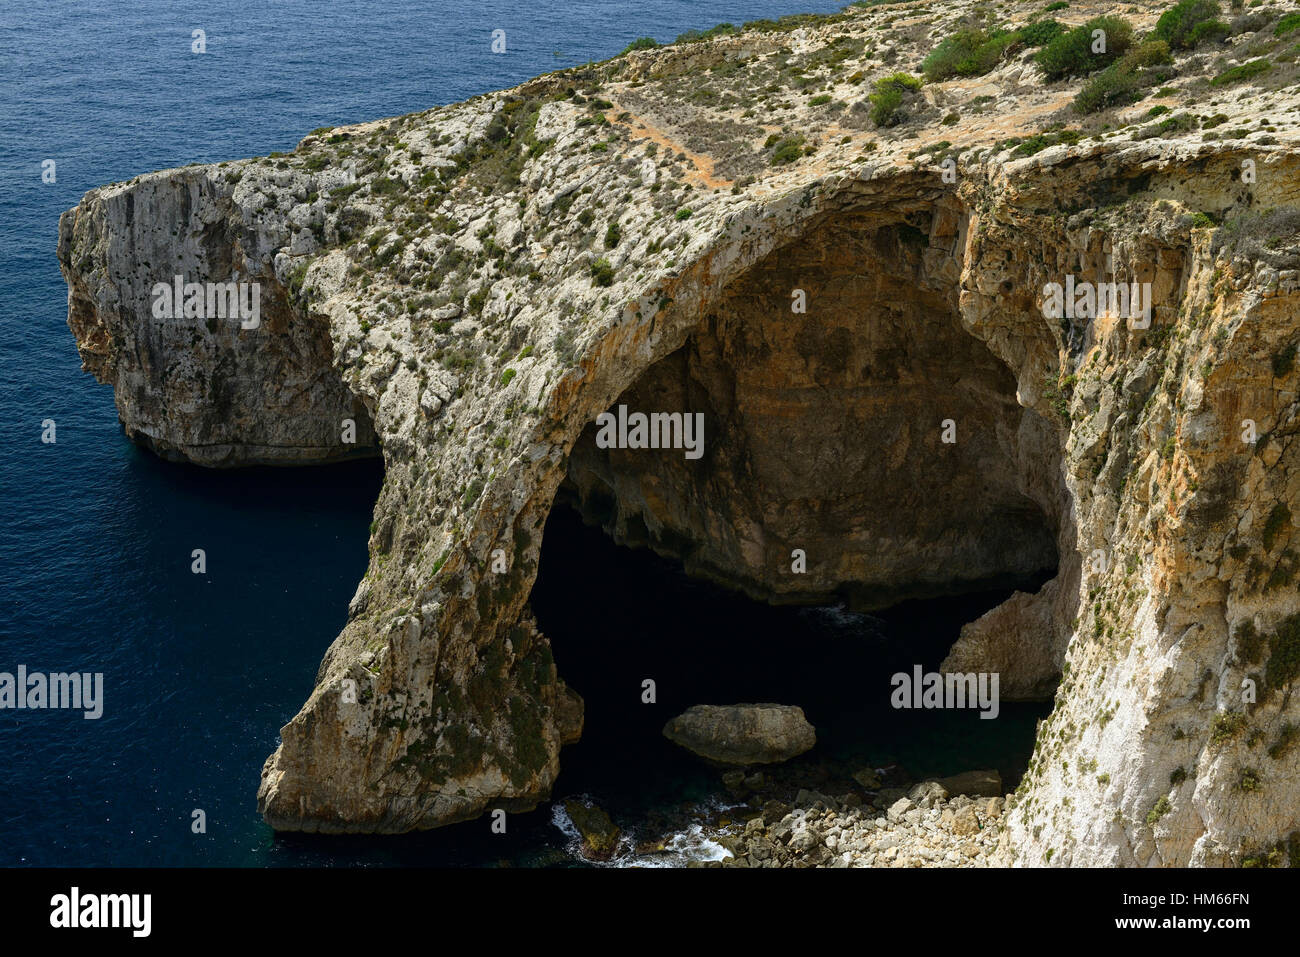 Blaue Grotte Malta Meer Bogen Küste Küstenerosion Mittelmeer azurblauem Meer touristische Attraktion Sightseeing Wahrzeichen RM Welt Stockfoto